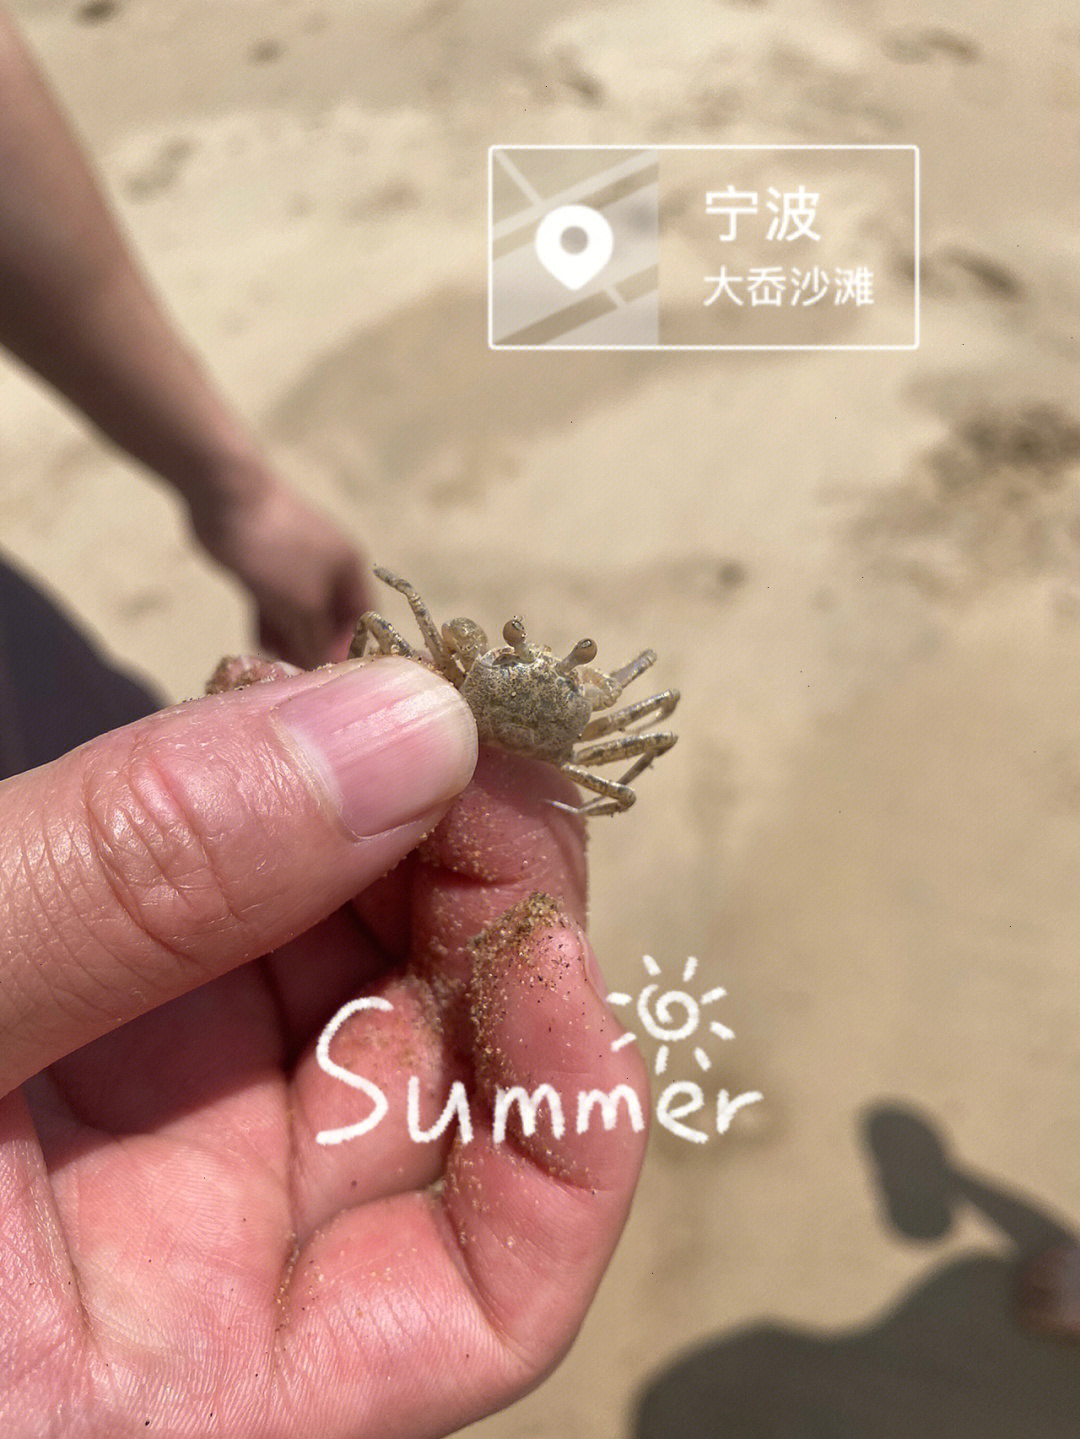 海滩上的沙蟹能吃吗图片